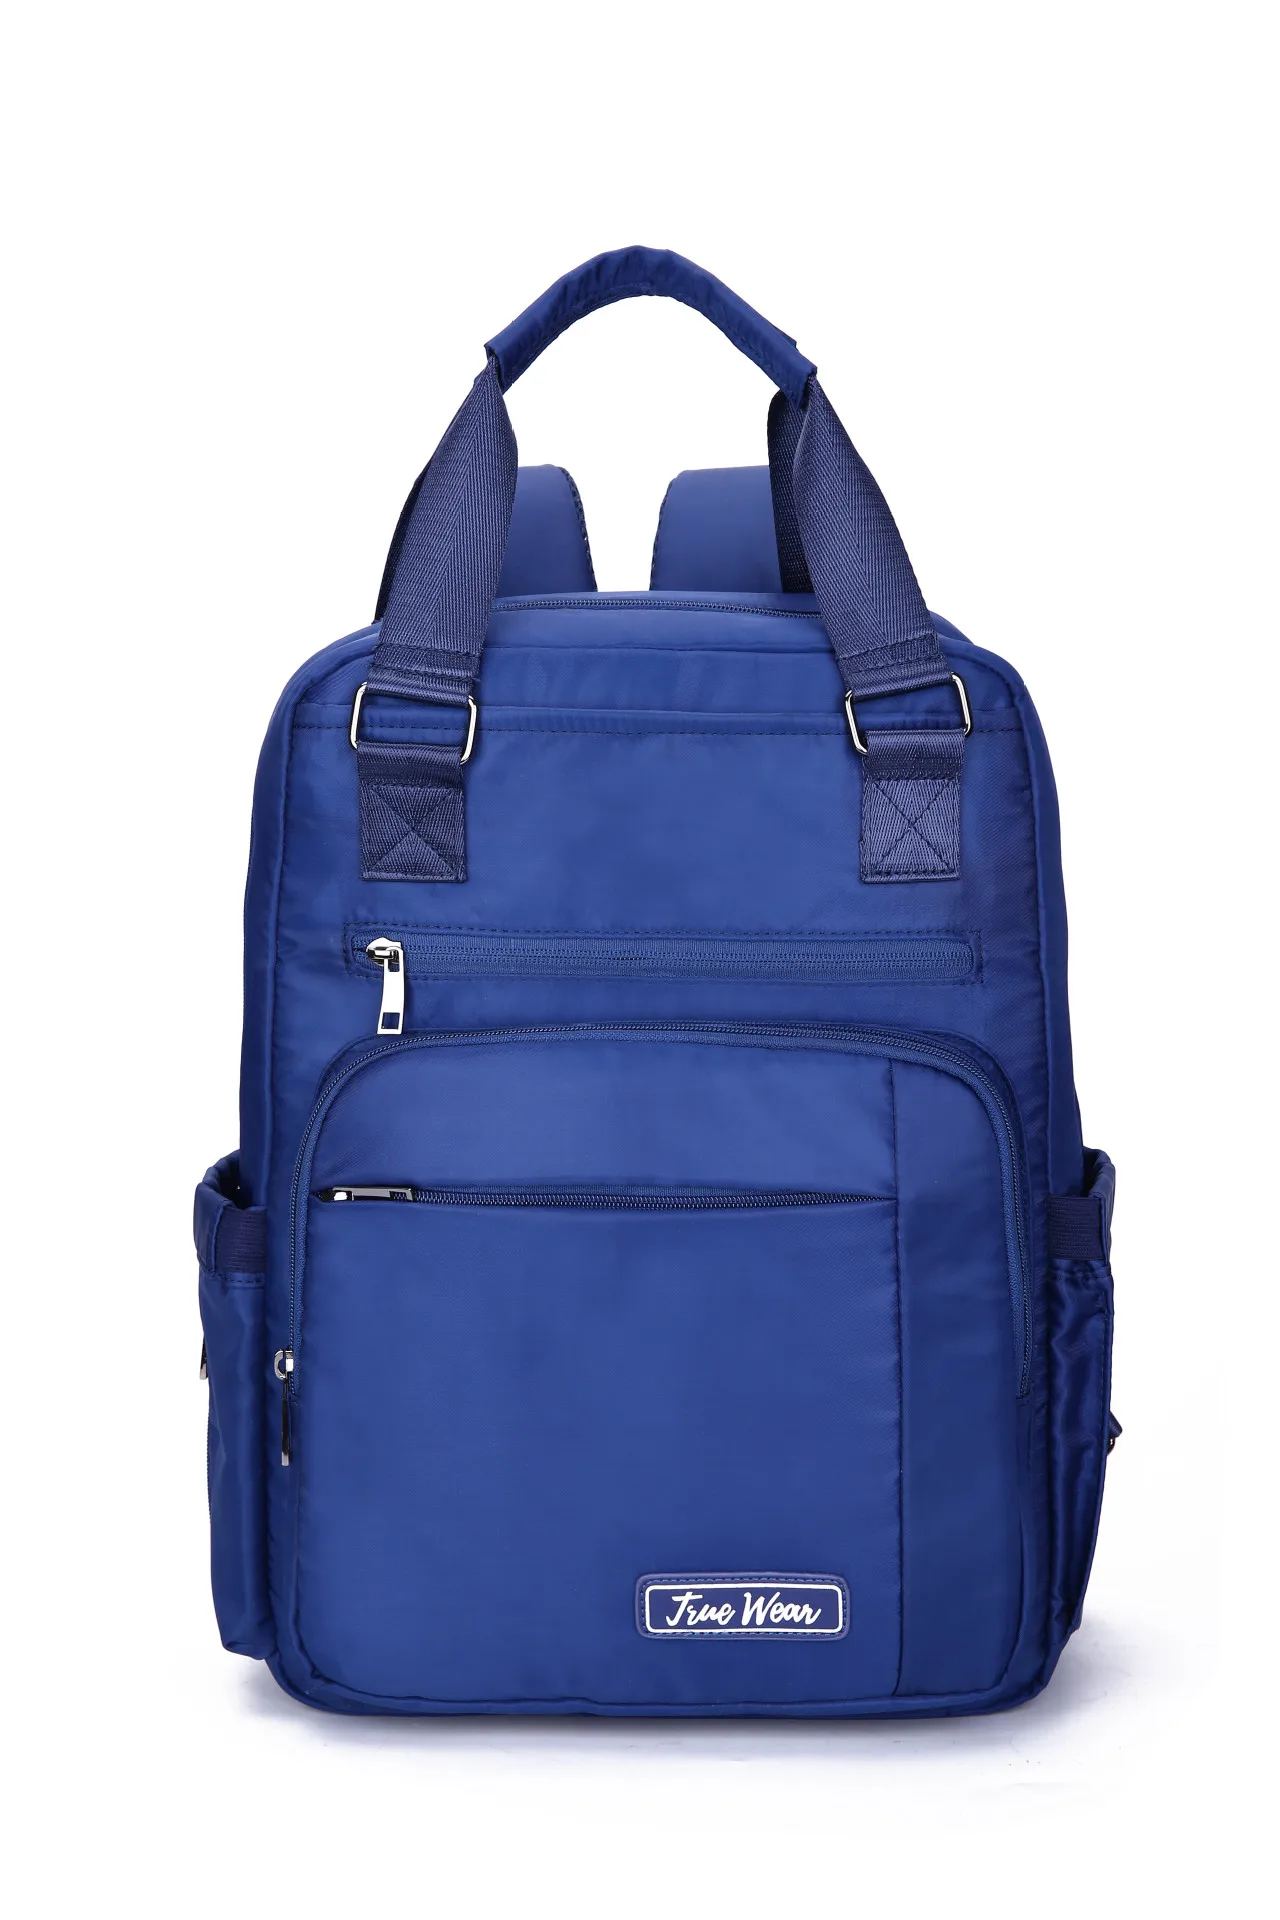 Модная сумка для мам, многофункциональная сумка на плечо, вместительная сумка для мамы, рюкзак для подгузников, коляска для мам, подгузник для мам